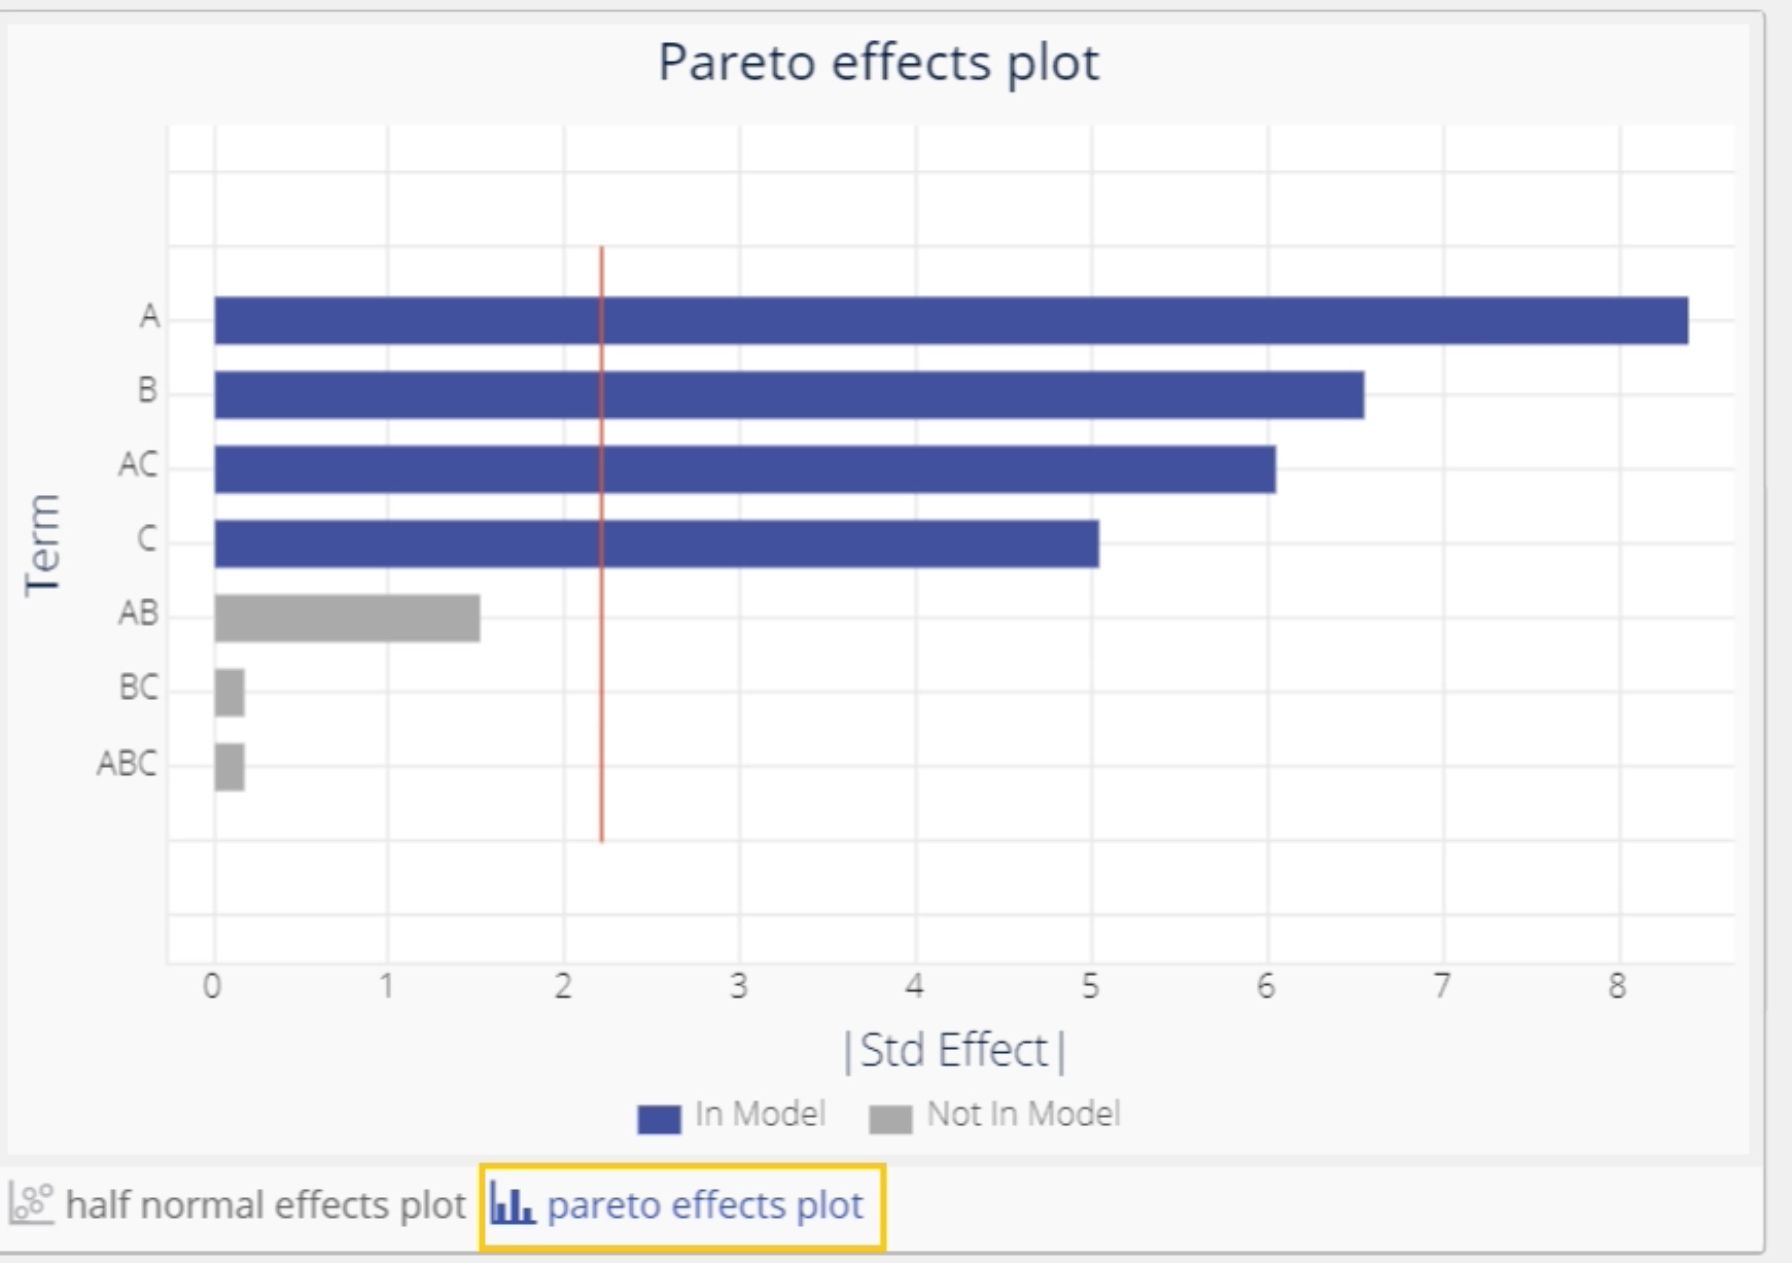 Pareto chart of full DOE effects.